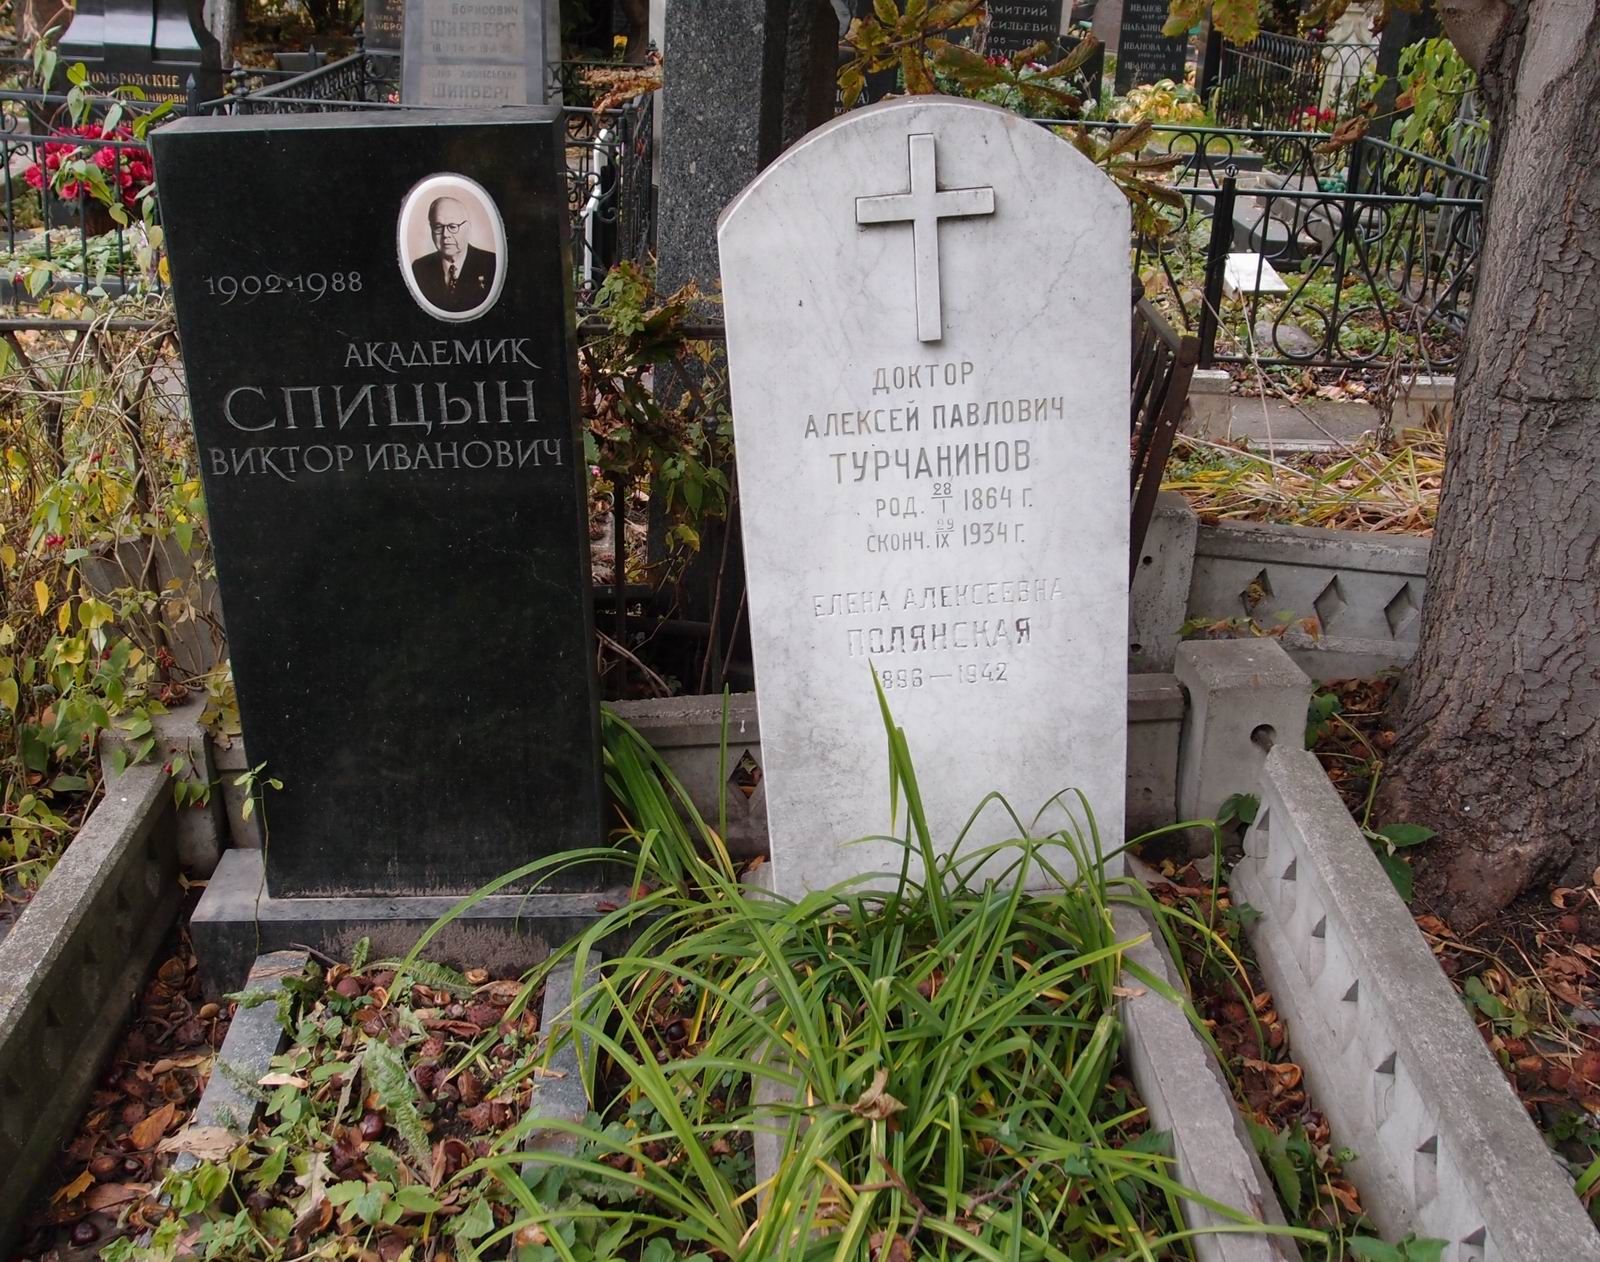 Памятник на могиле Спицына В.И. (1902-1988), на Новодевичьем кладбище (1-12-5).